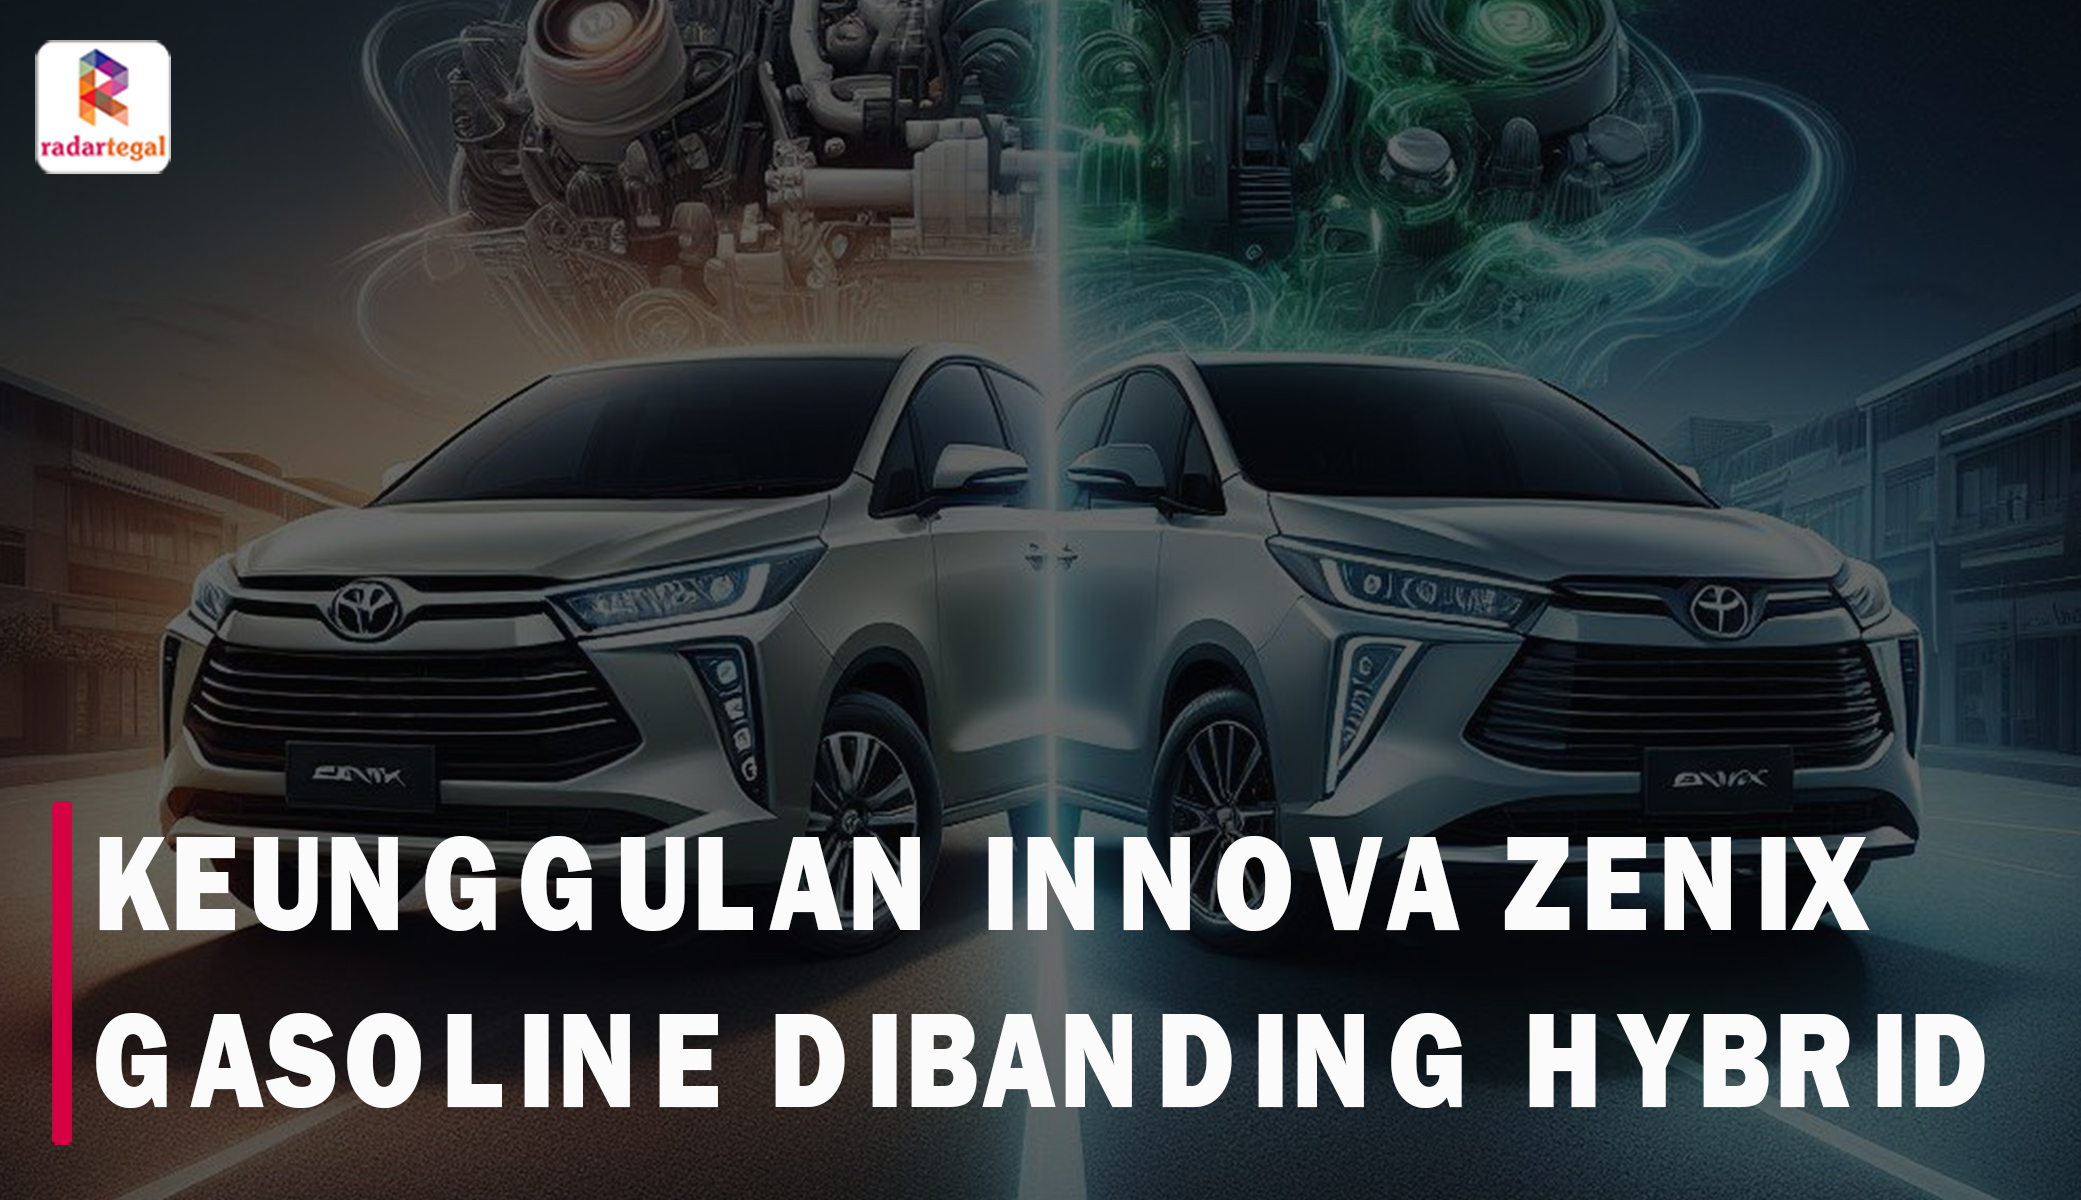 Keunggulan Toyota Innova Zenix Gasoline Dibanding Versi Hybrid, Ini Untungnya Bagi Pengguna